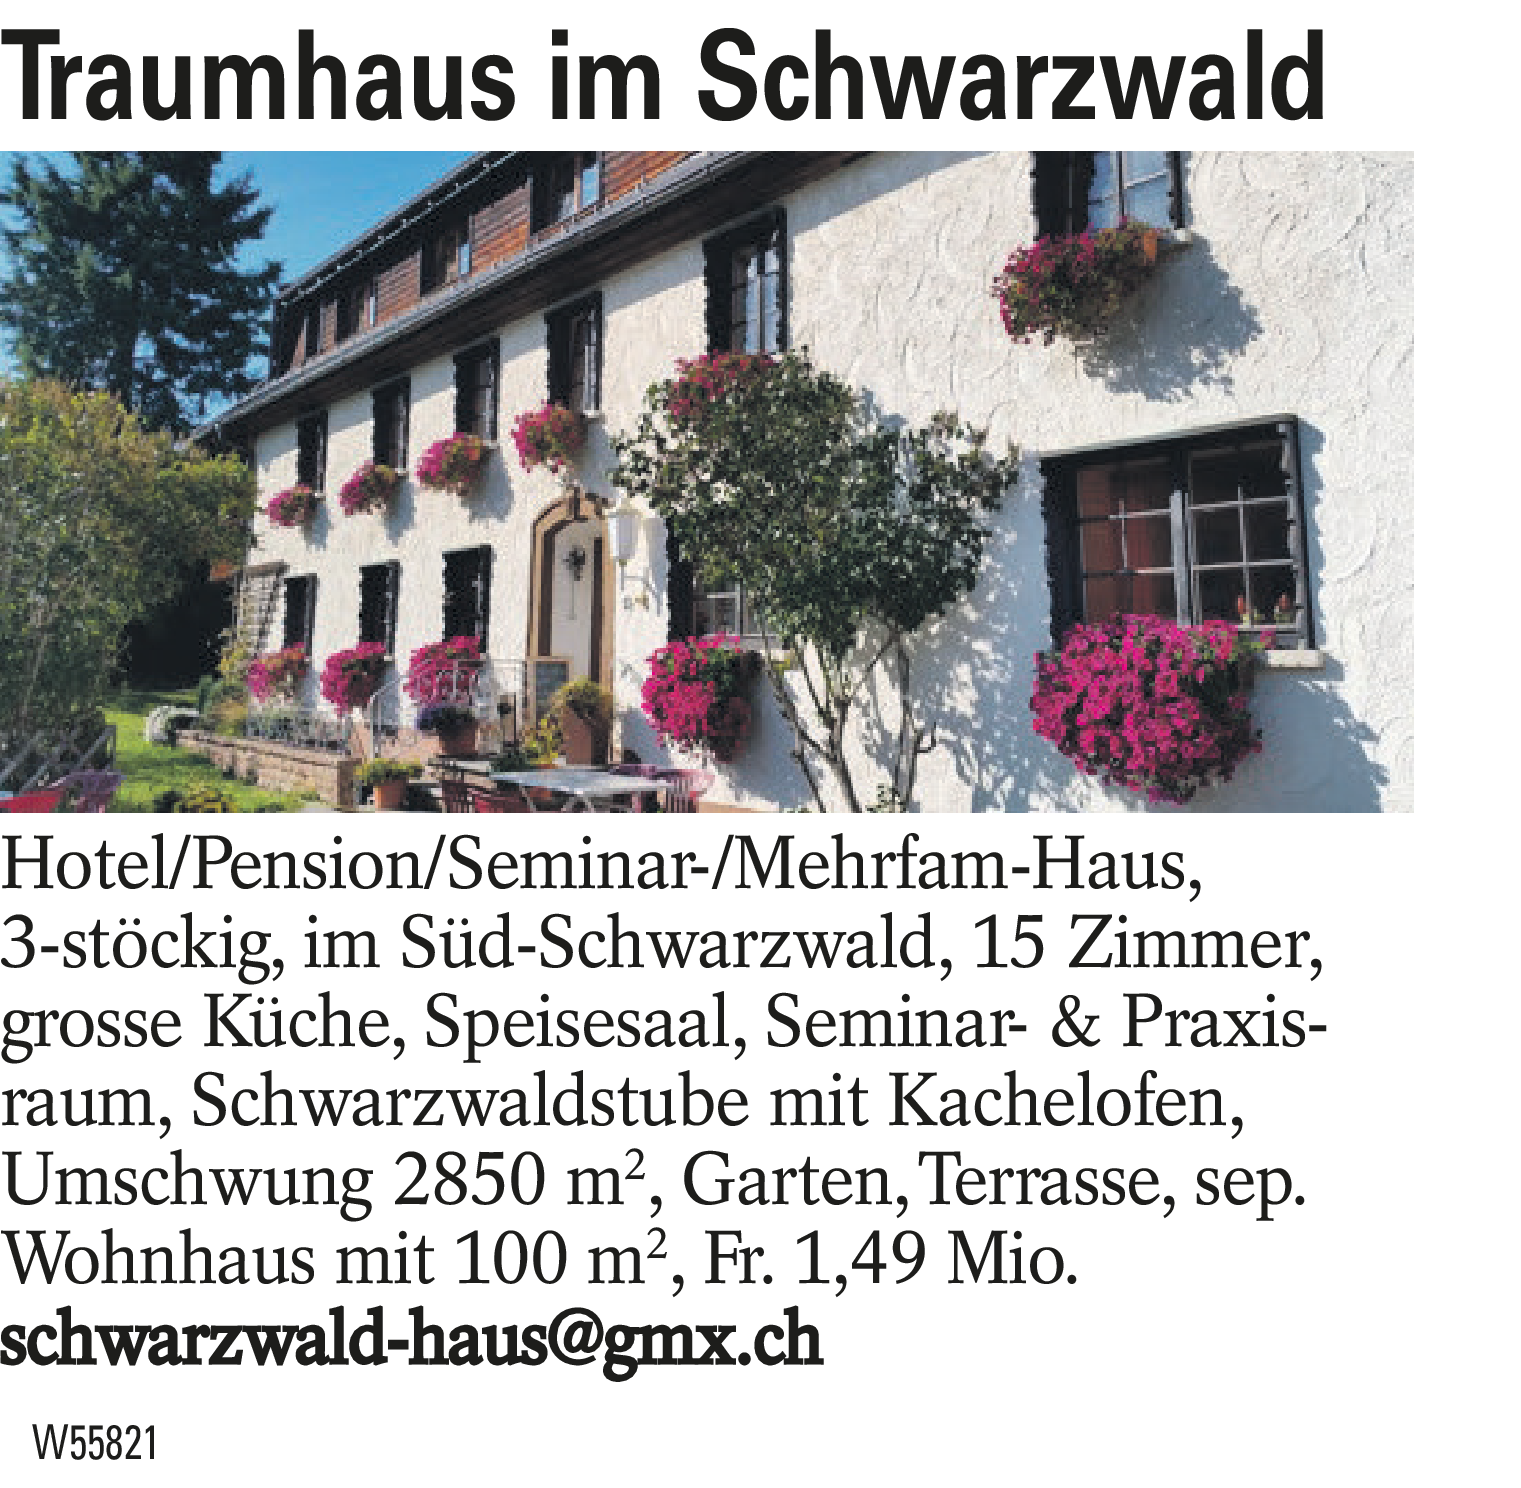 Traumhaus im Schwarzwald